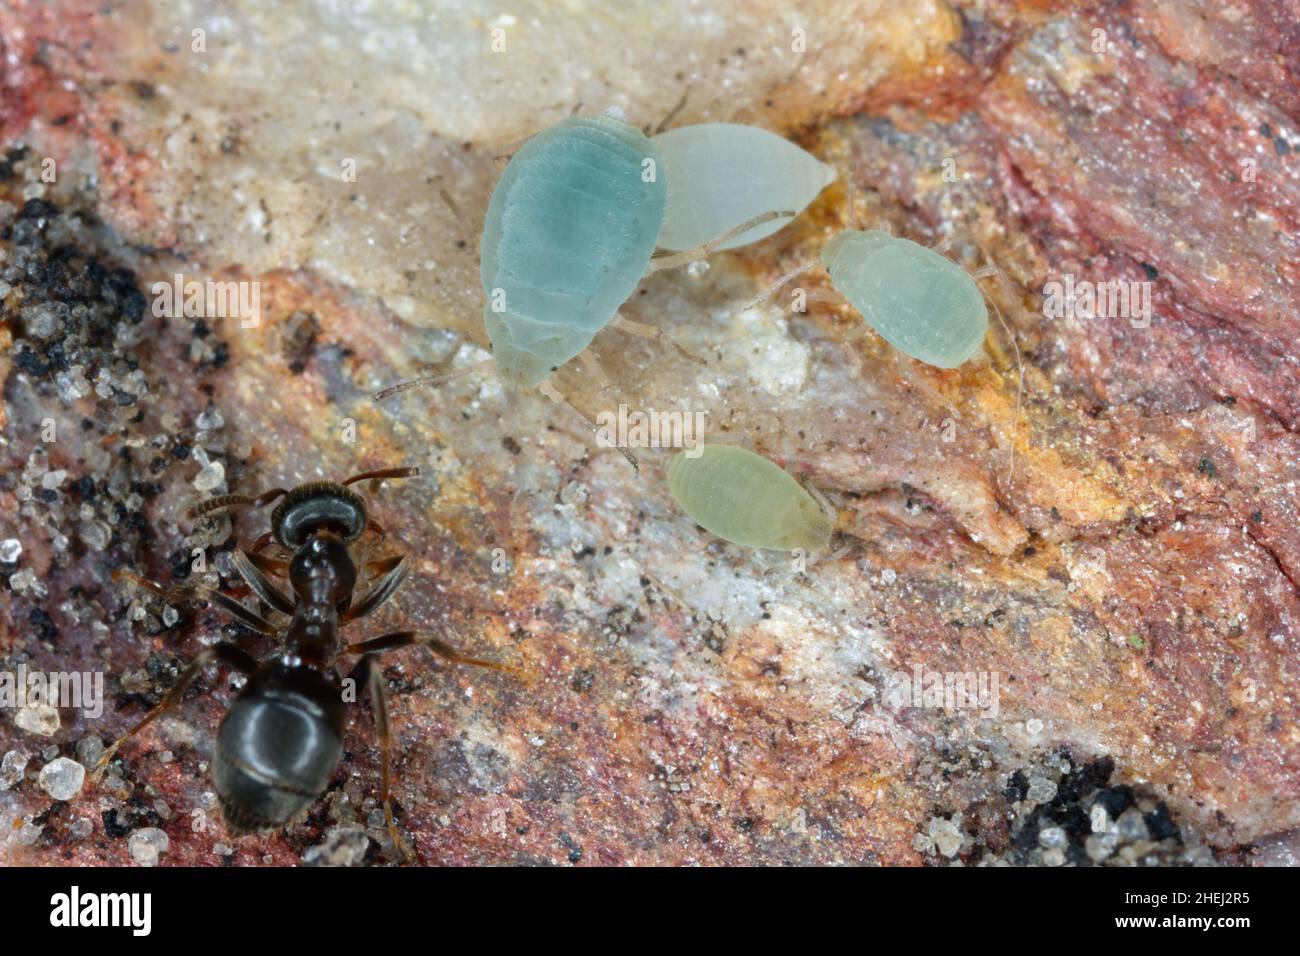 Unterirdische Blattläuse mit Ameisen. Hohe Vergrößerung Stockfoto